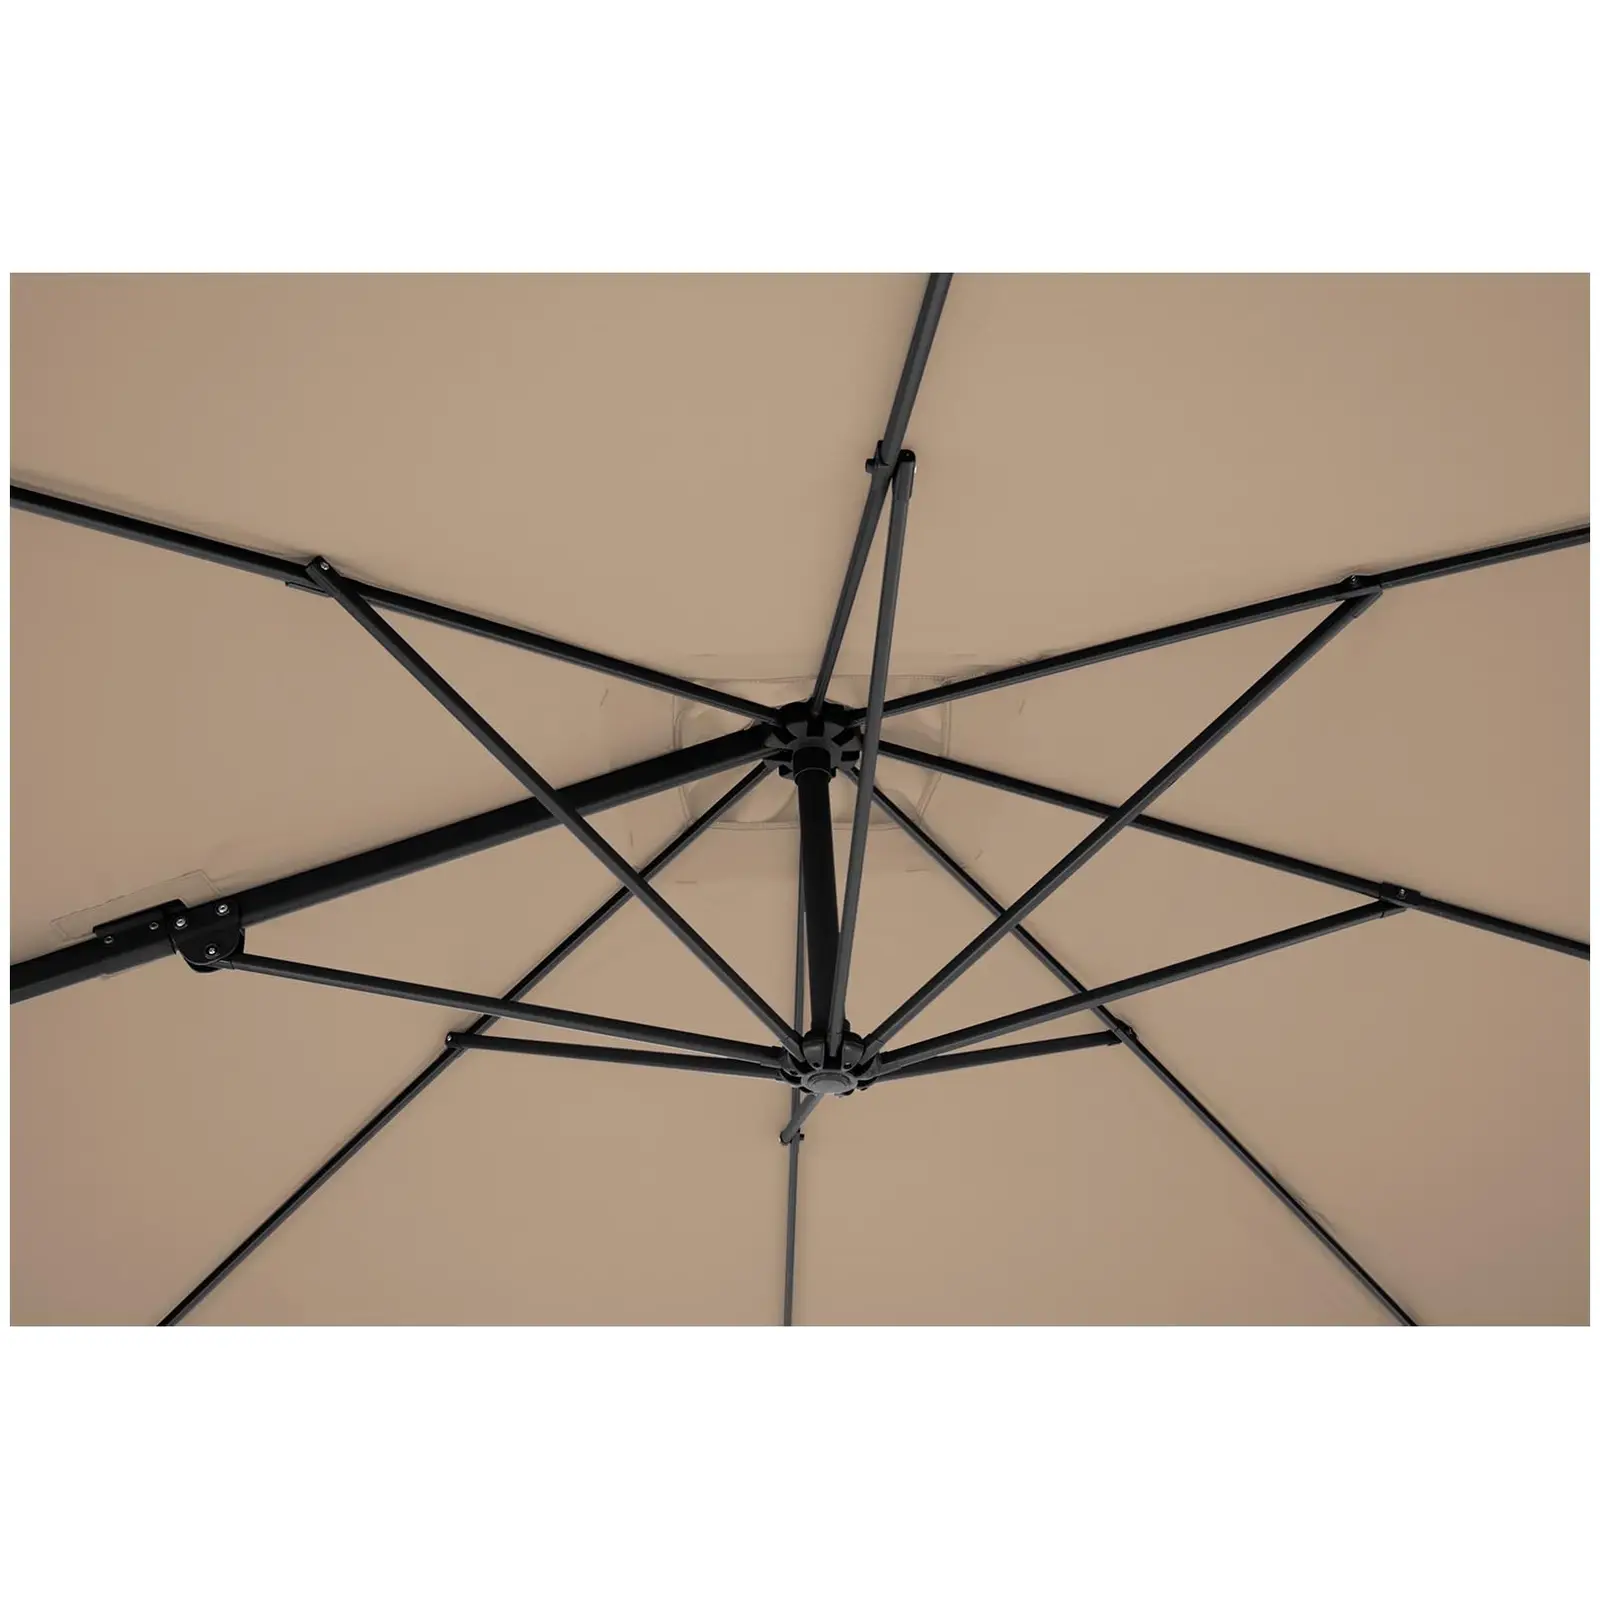 Ombrellone decentrato - Grigio talpa - Quadrato - 250 x 250 cm - Inclinabile e girabile